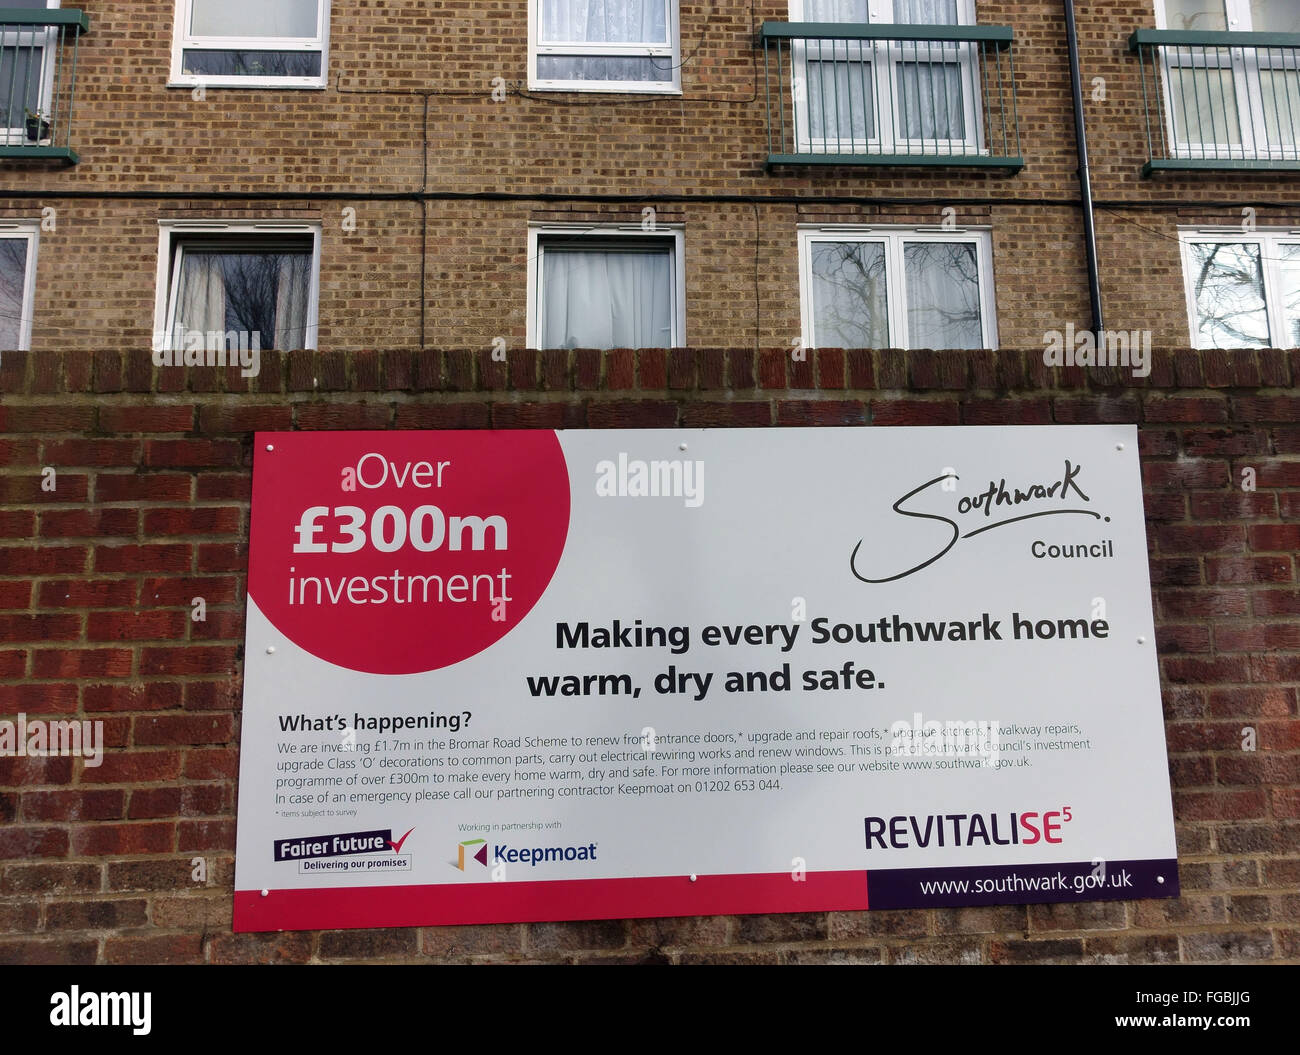 La vivienda social mejorada por Southwark Council, al sur de Londres Foto de stock